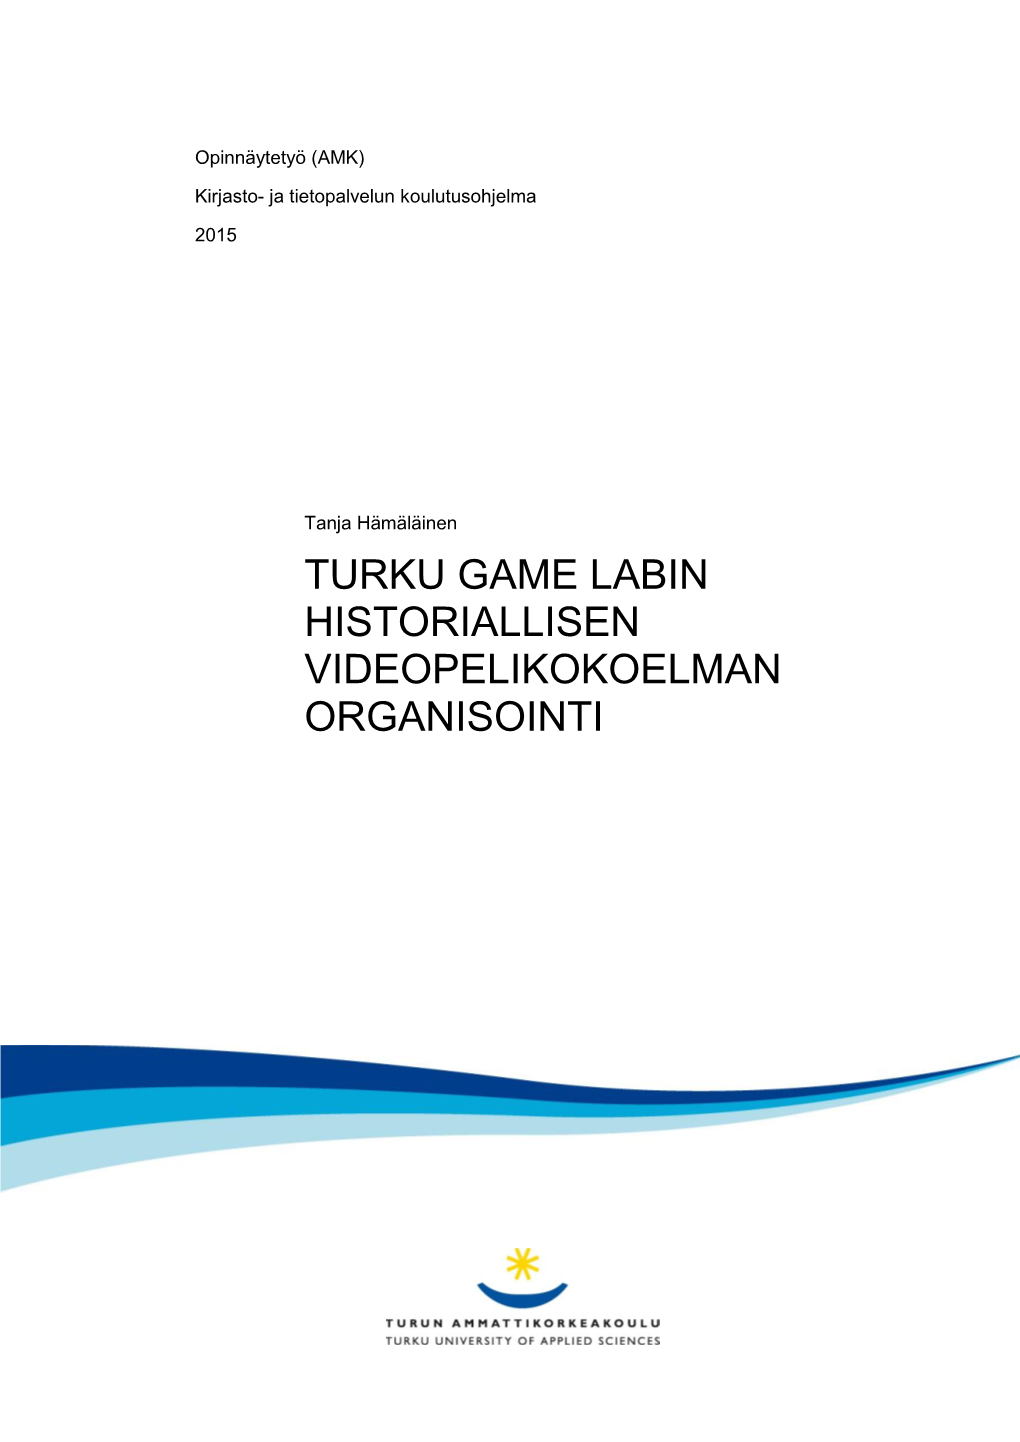 Turku Game Labin Historiallisen Videopelikokoelman Organisointi